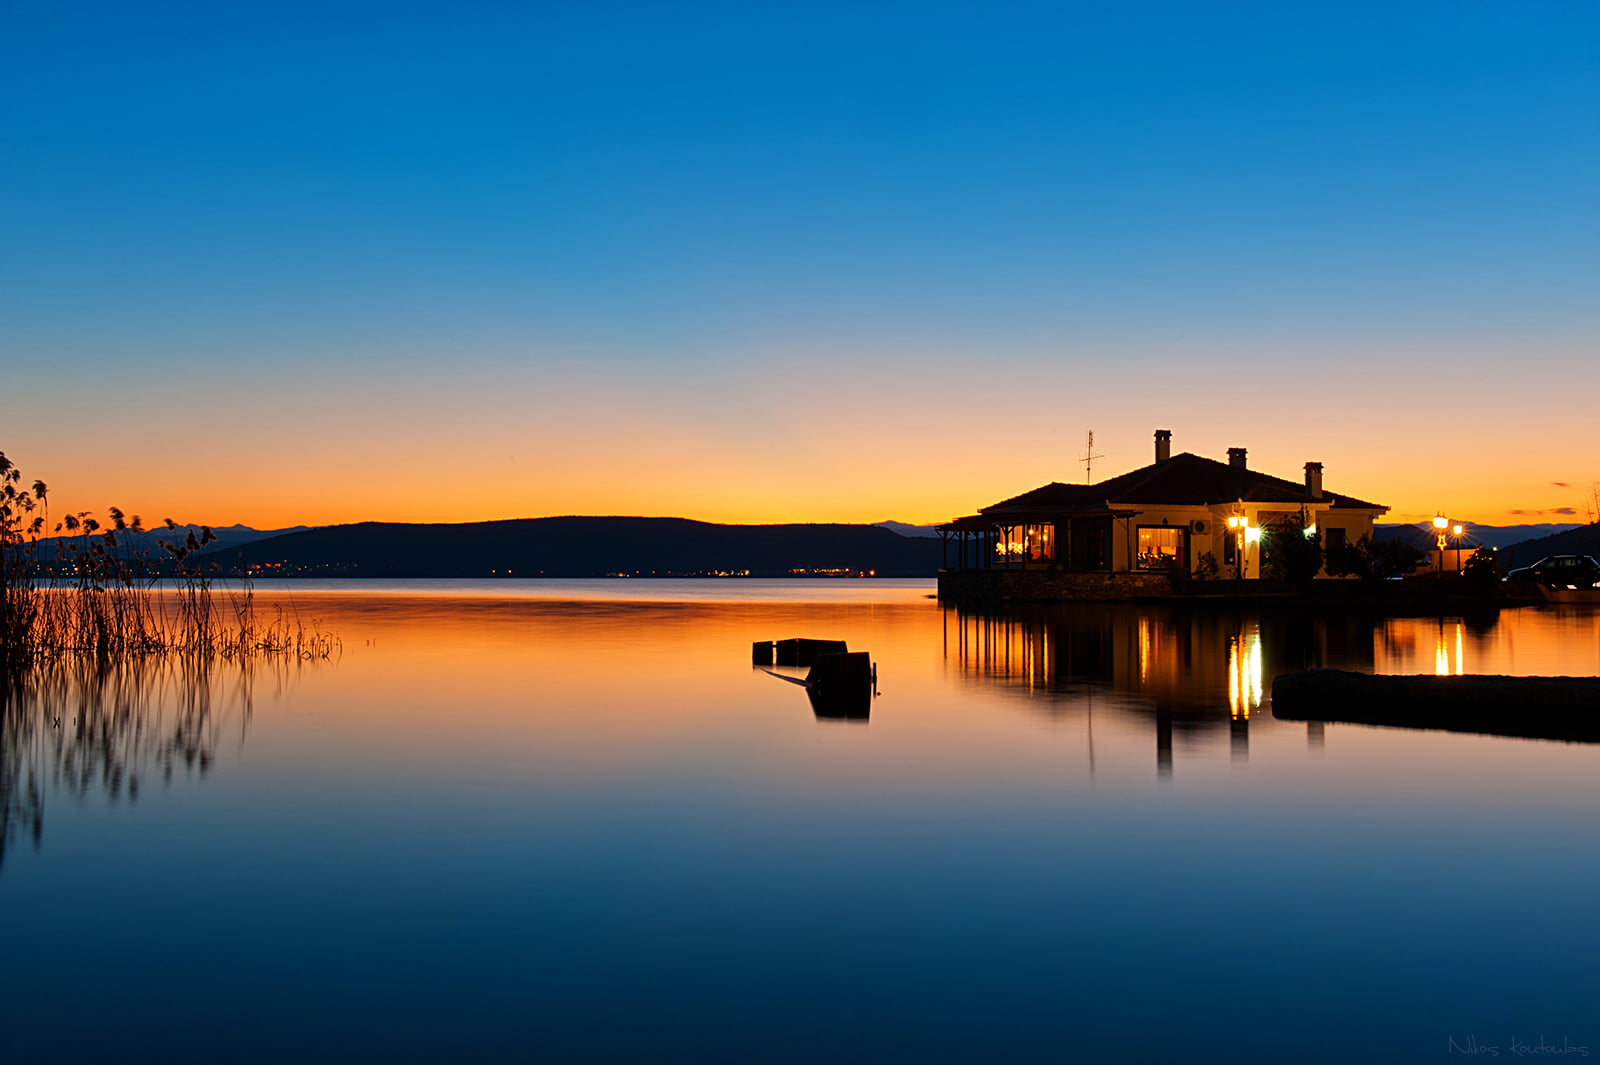 silhouette of house beside the body of water, Calmness, καστοριά